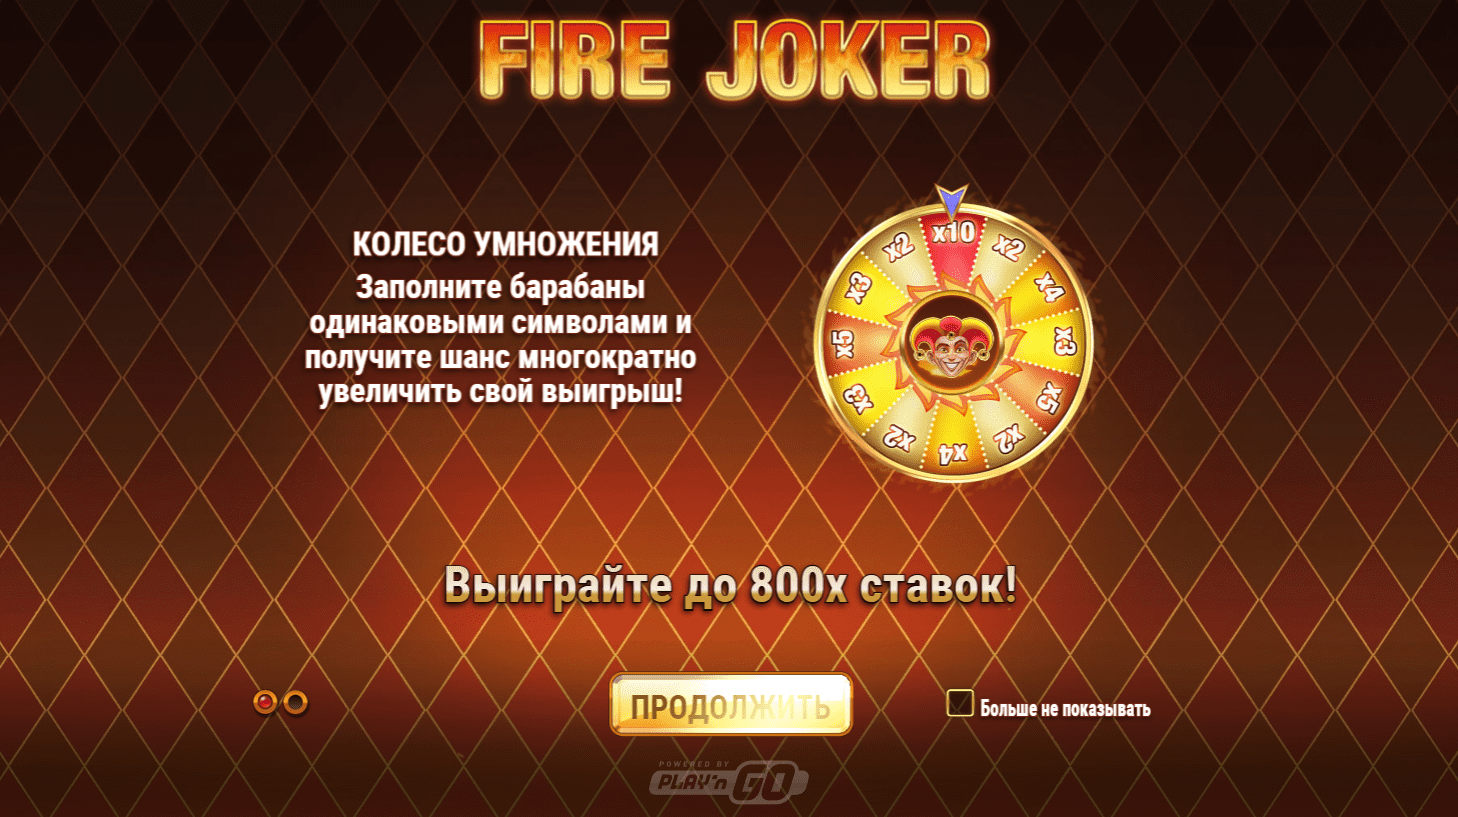 Fire joker основные символы